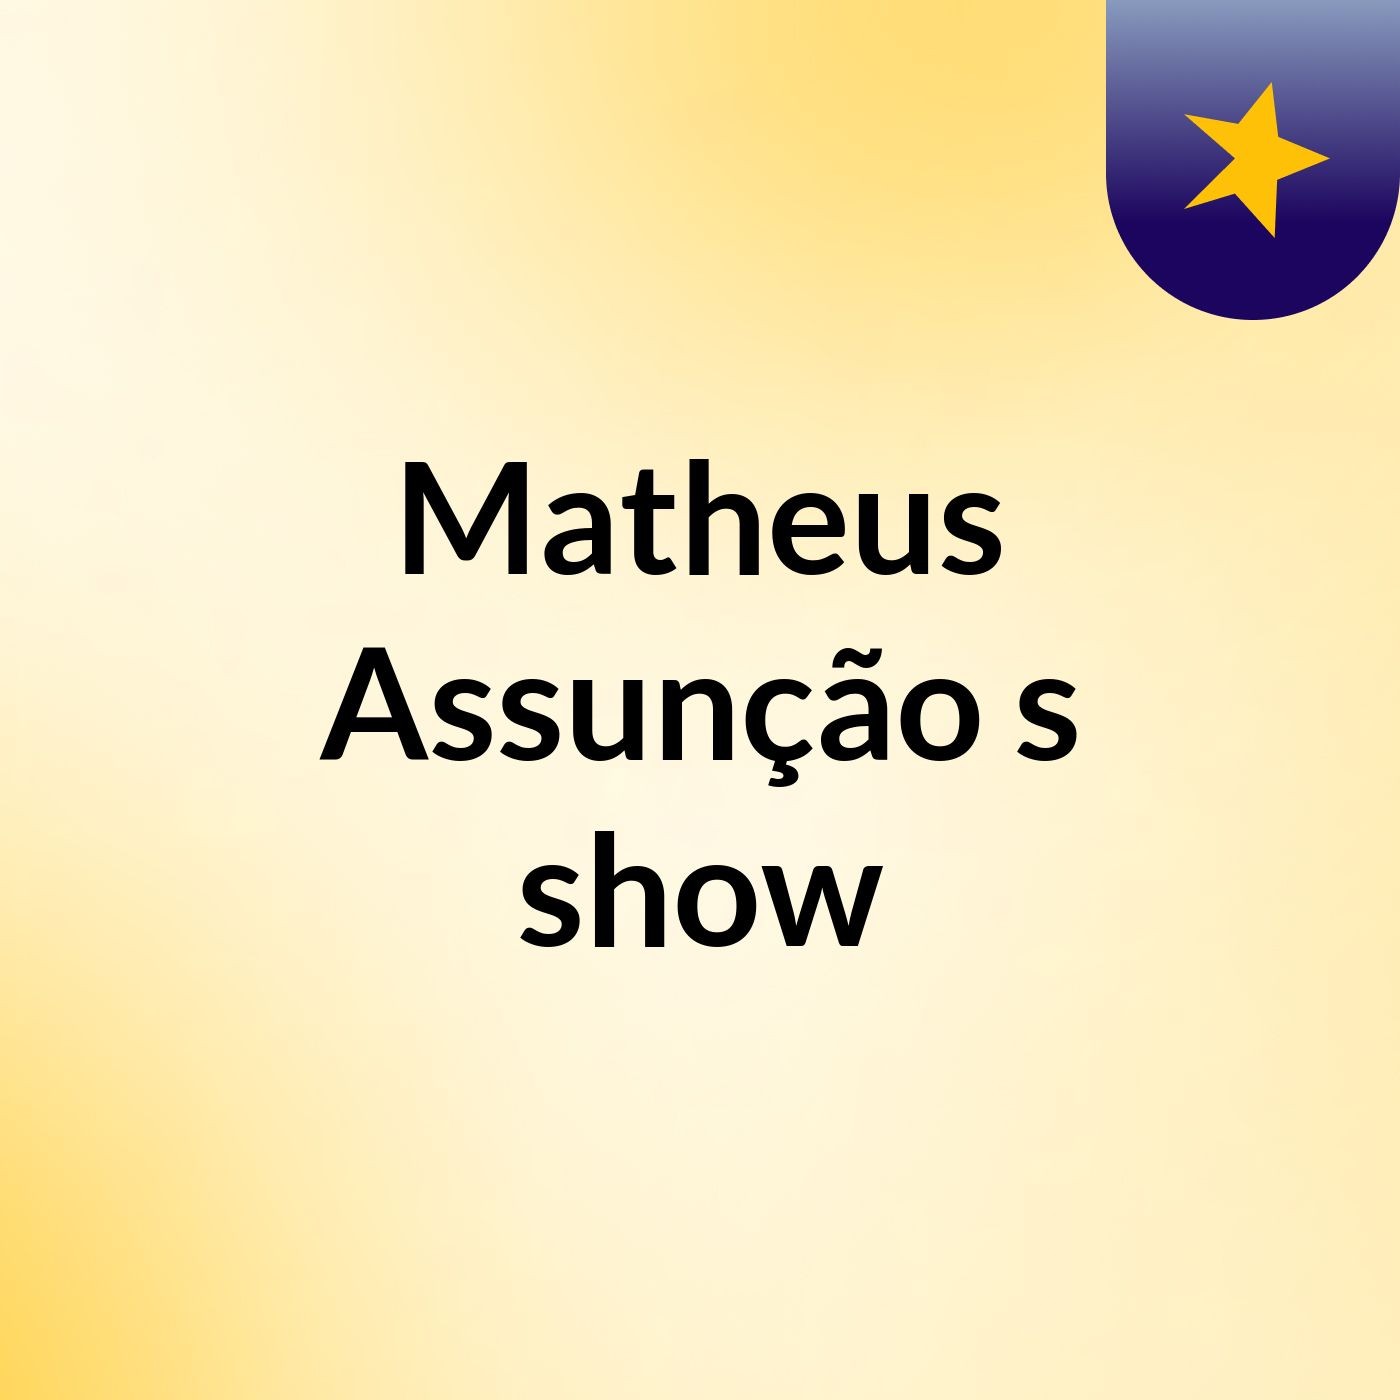 Matheus Assunção's show